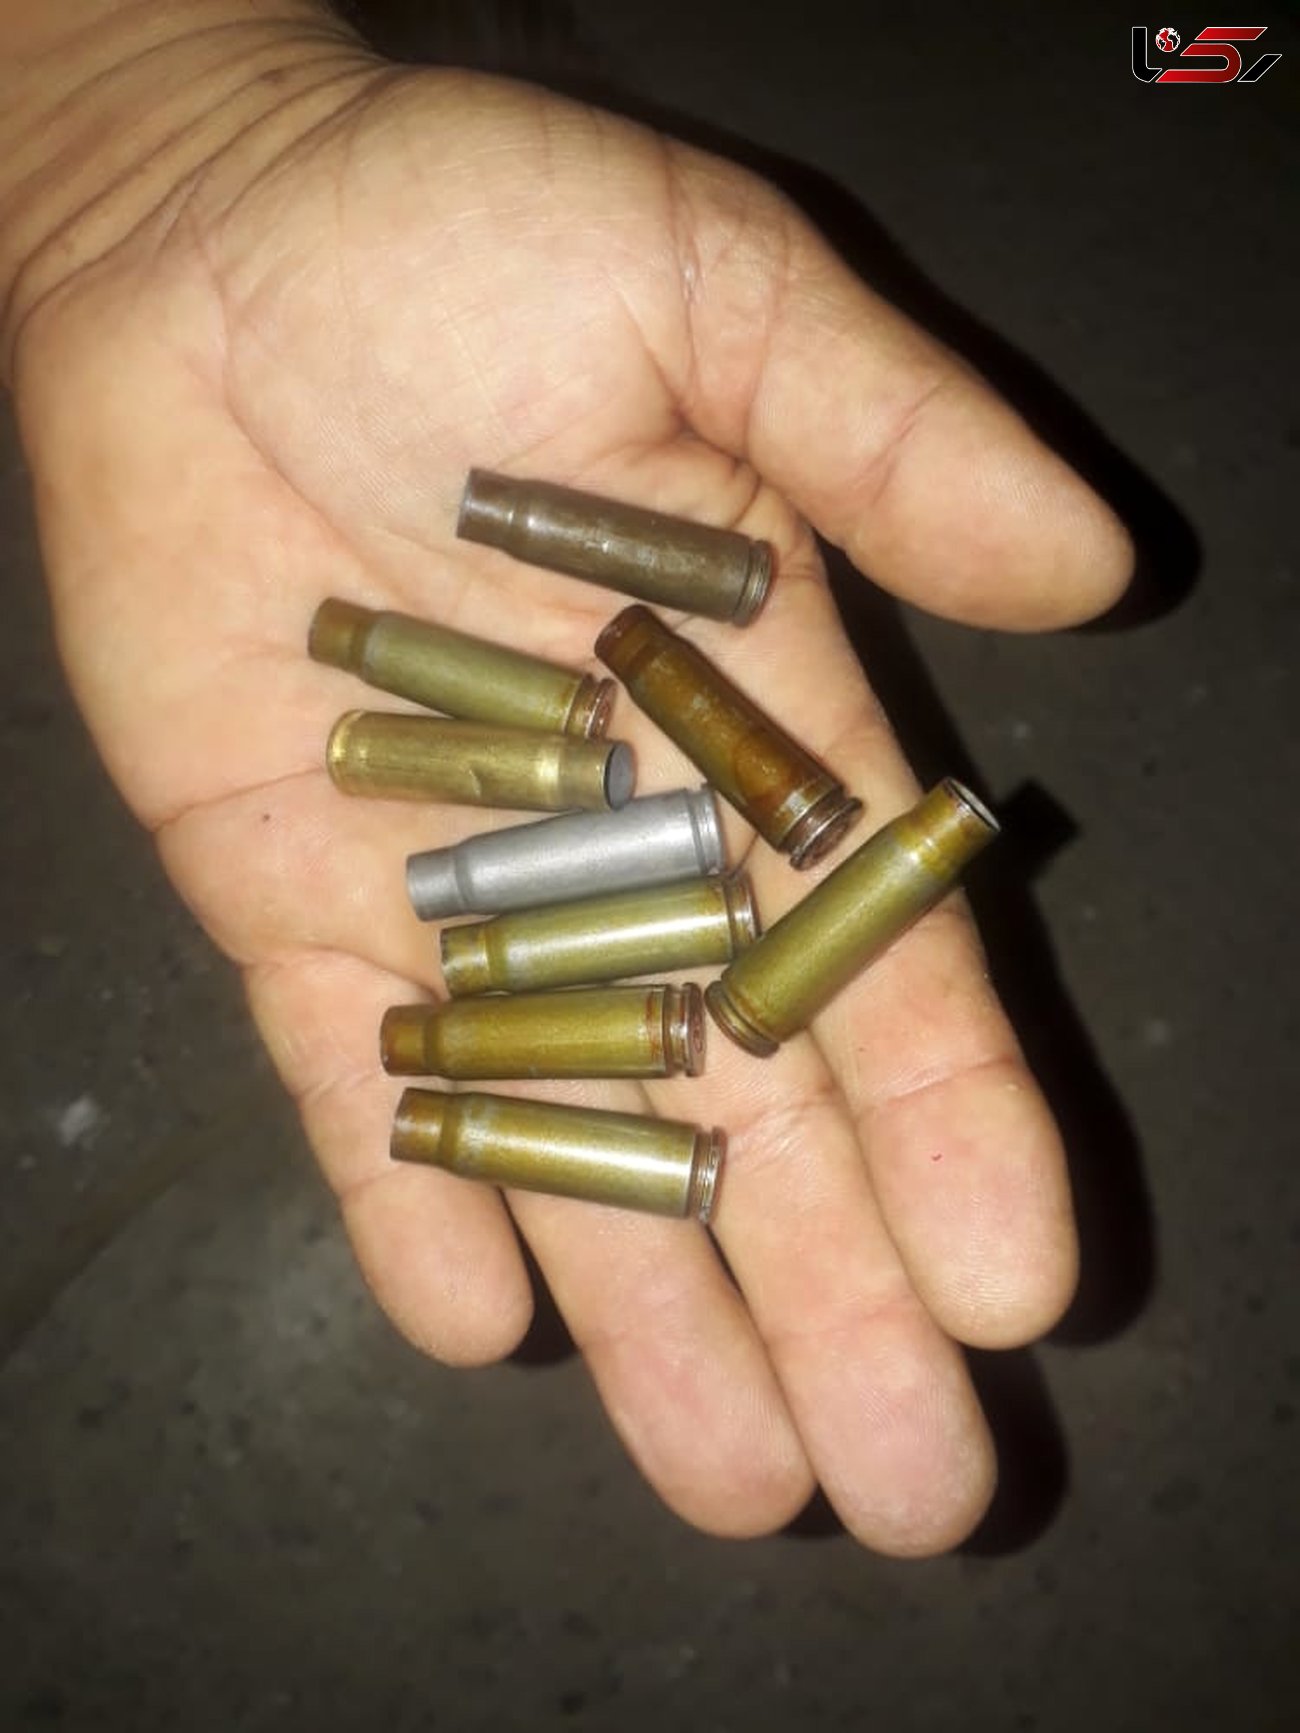 سرقت مسلحانه کابل برق در خرمشهر  / برق منطقه قطع شد + عکس تیرخوردن یک مرد